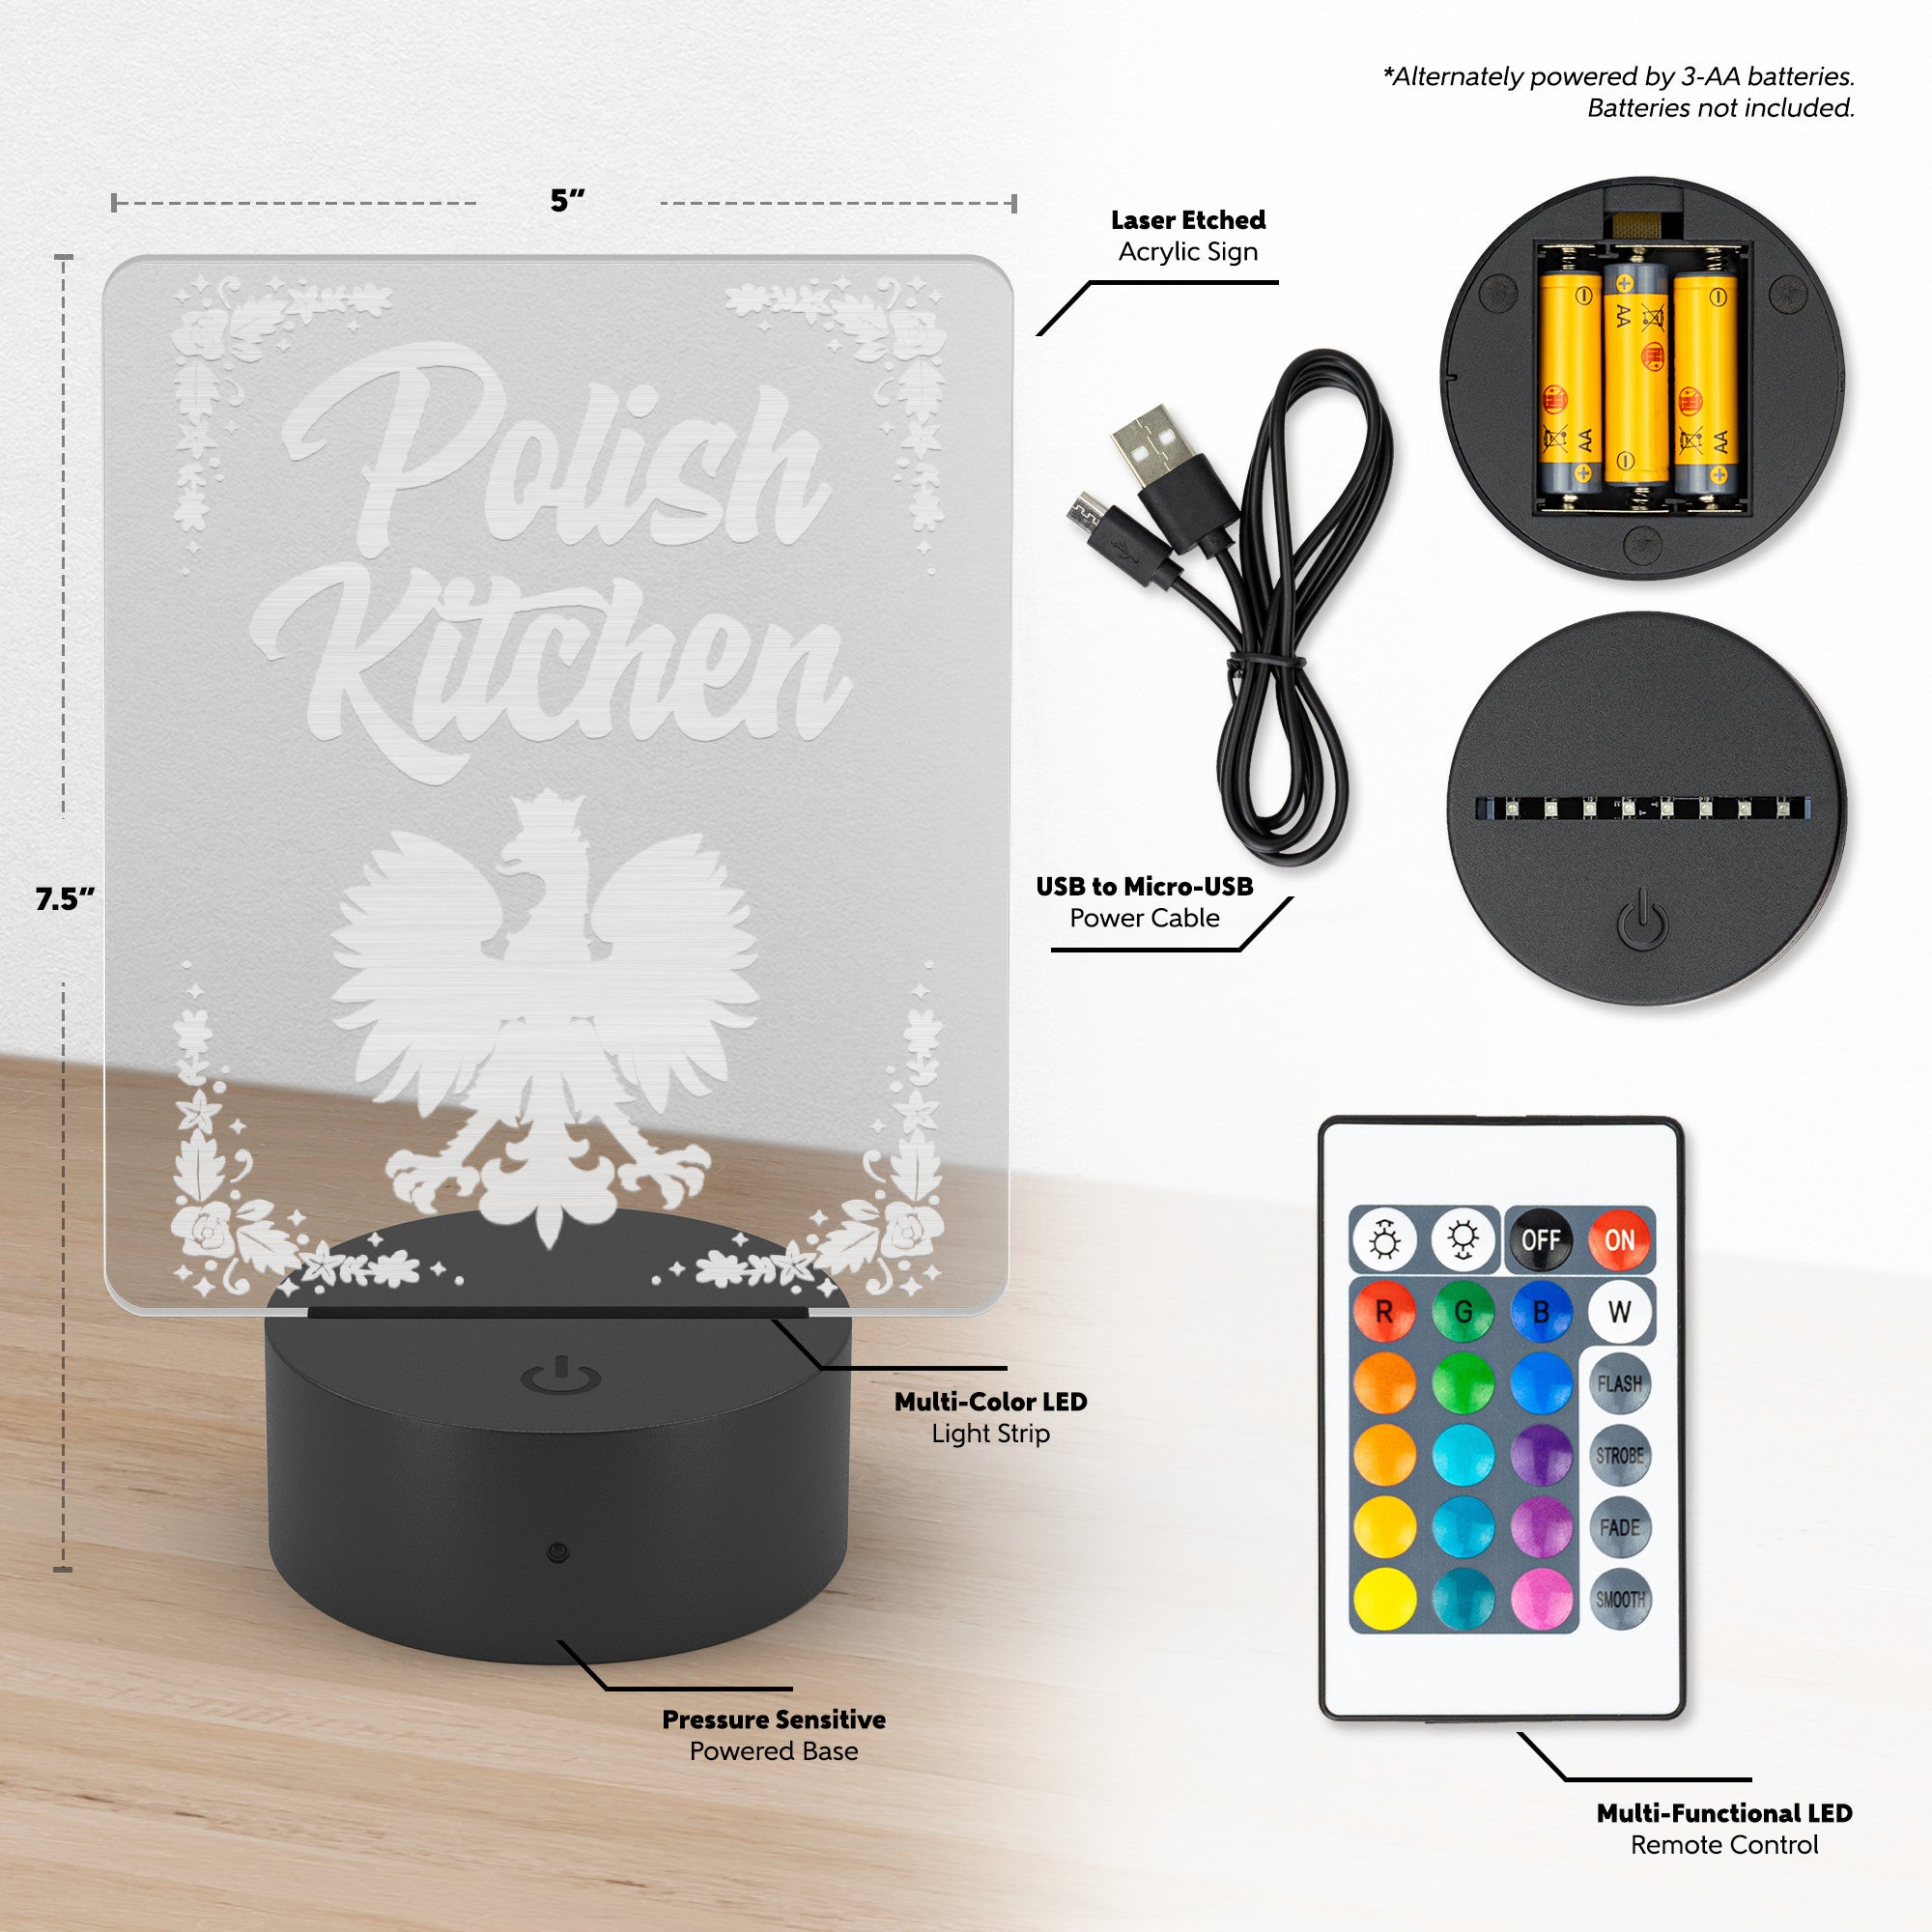 Polish Kitchen Rectangle Acrylic LED Sign LED Signs teelaunch   